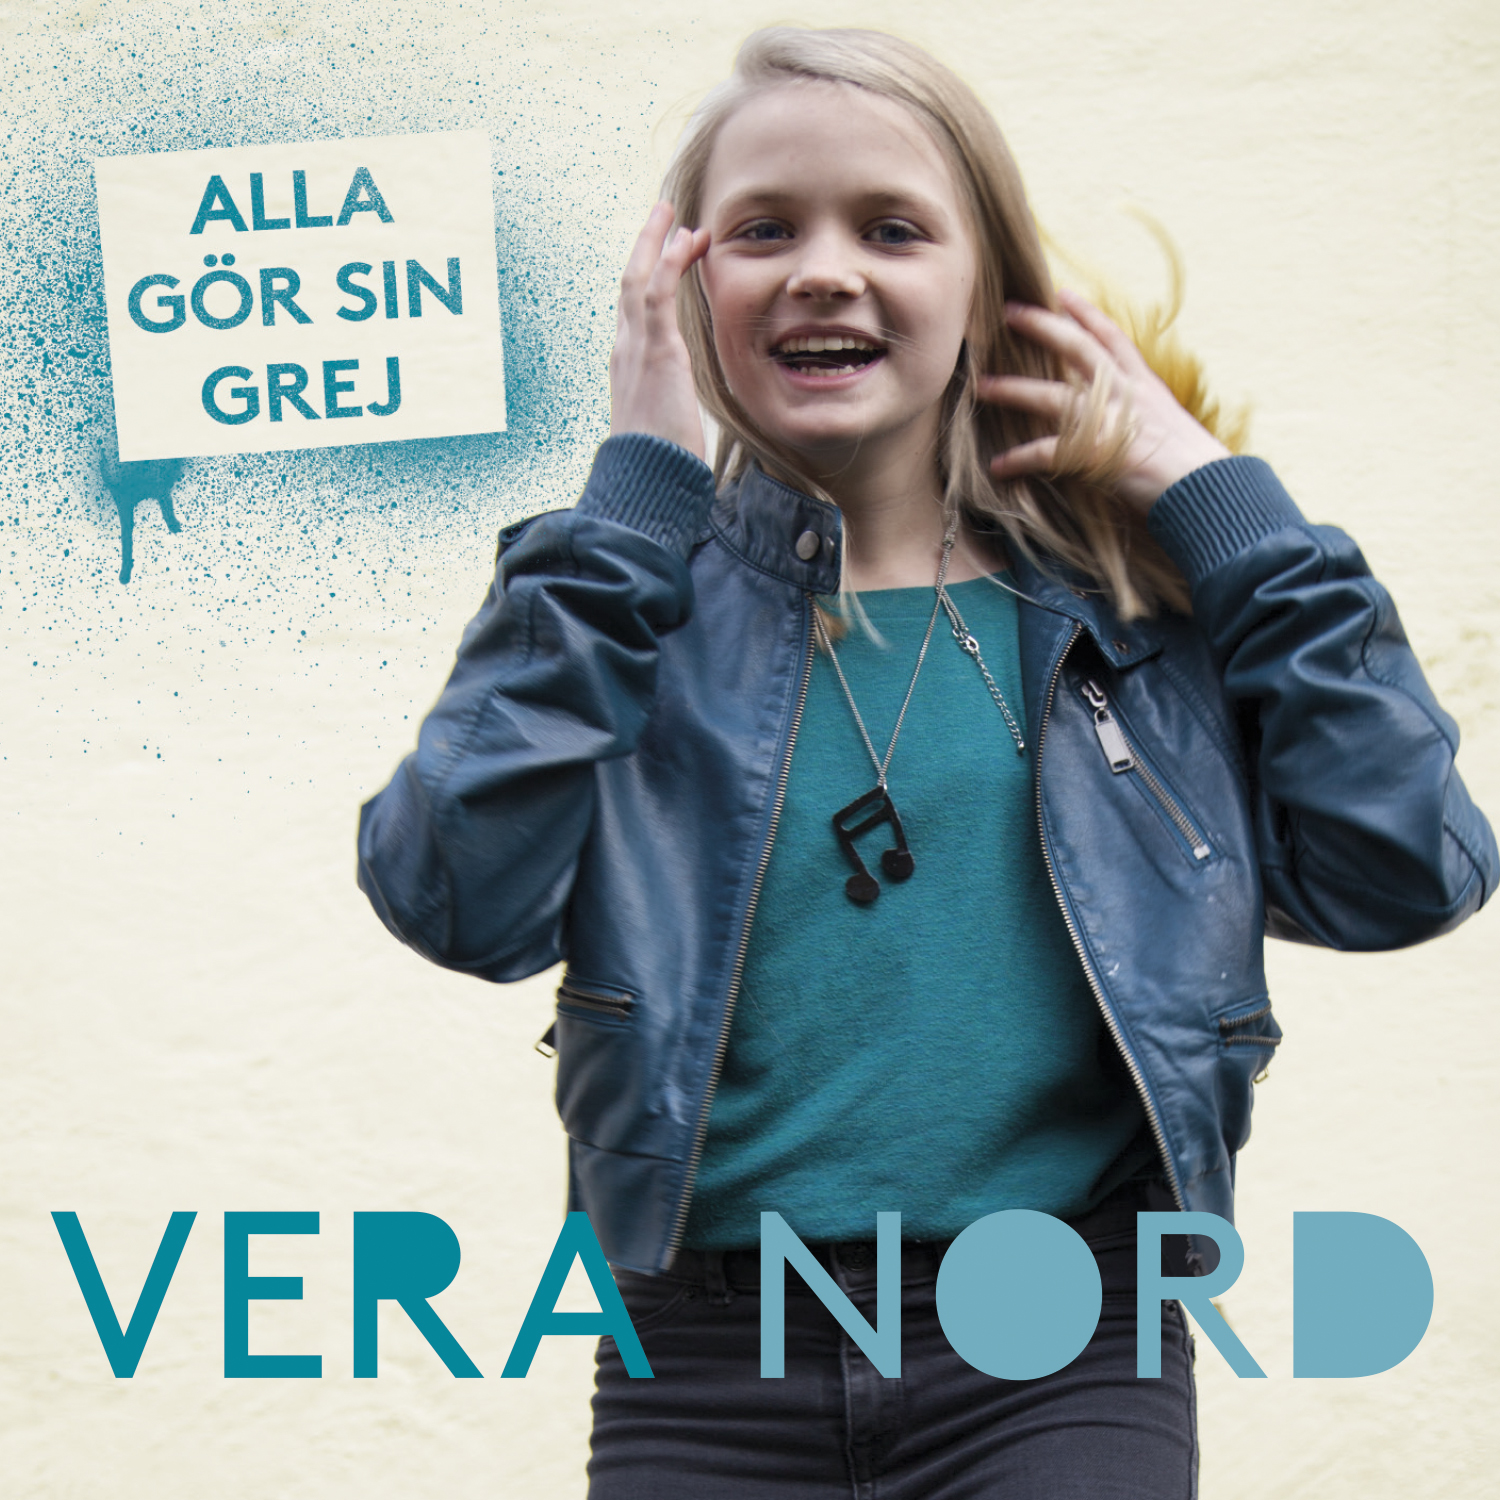 Vera Nord - Alla g r sin grej - CD